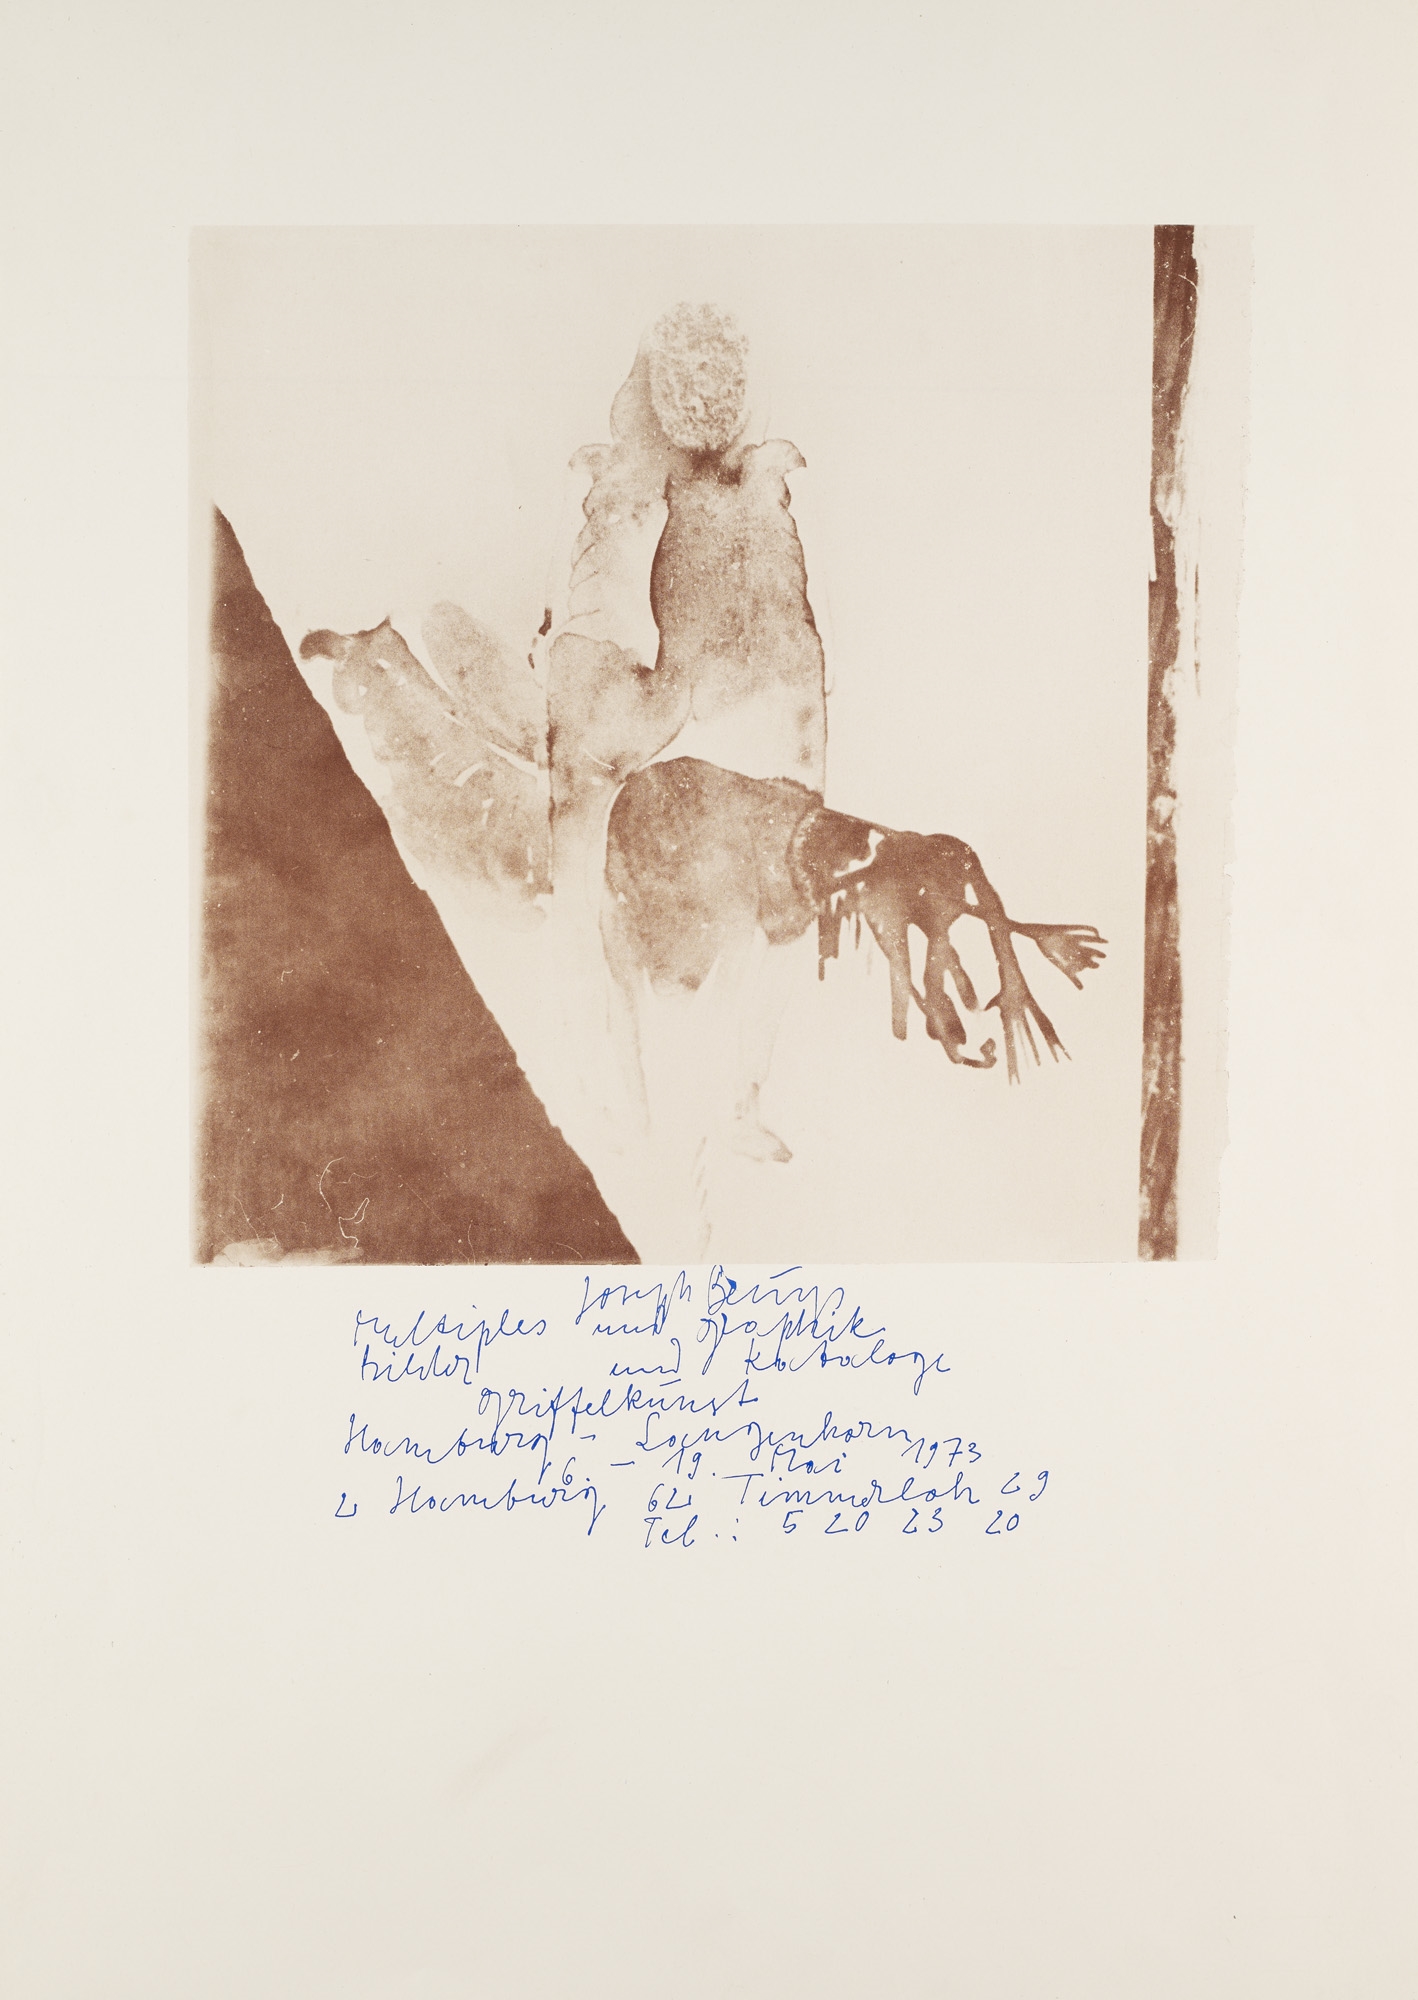 Plakat für die Griffelkunst by Joseph Beuys, 1973